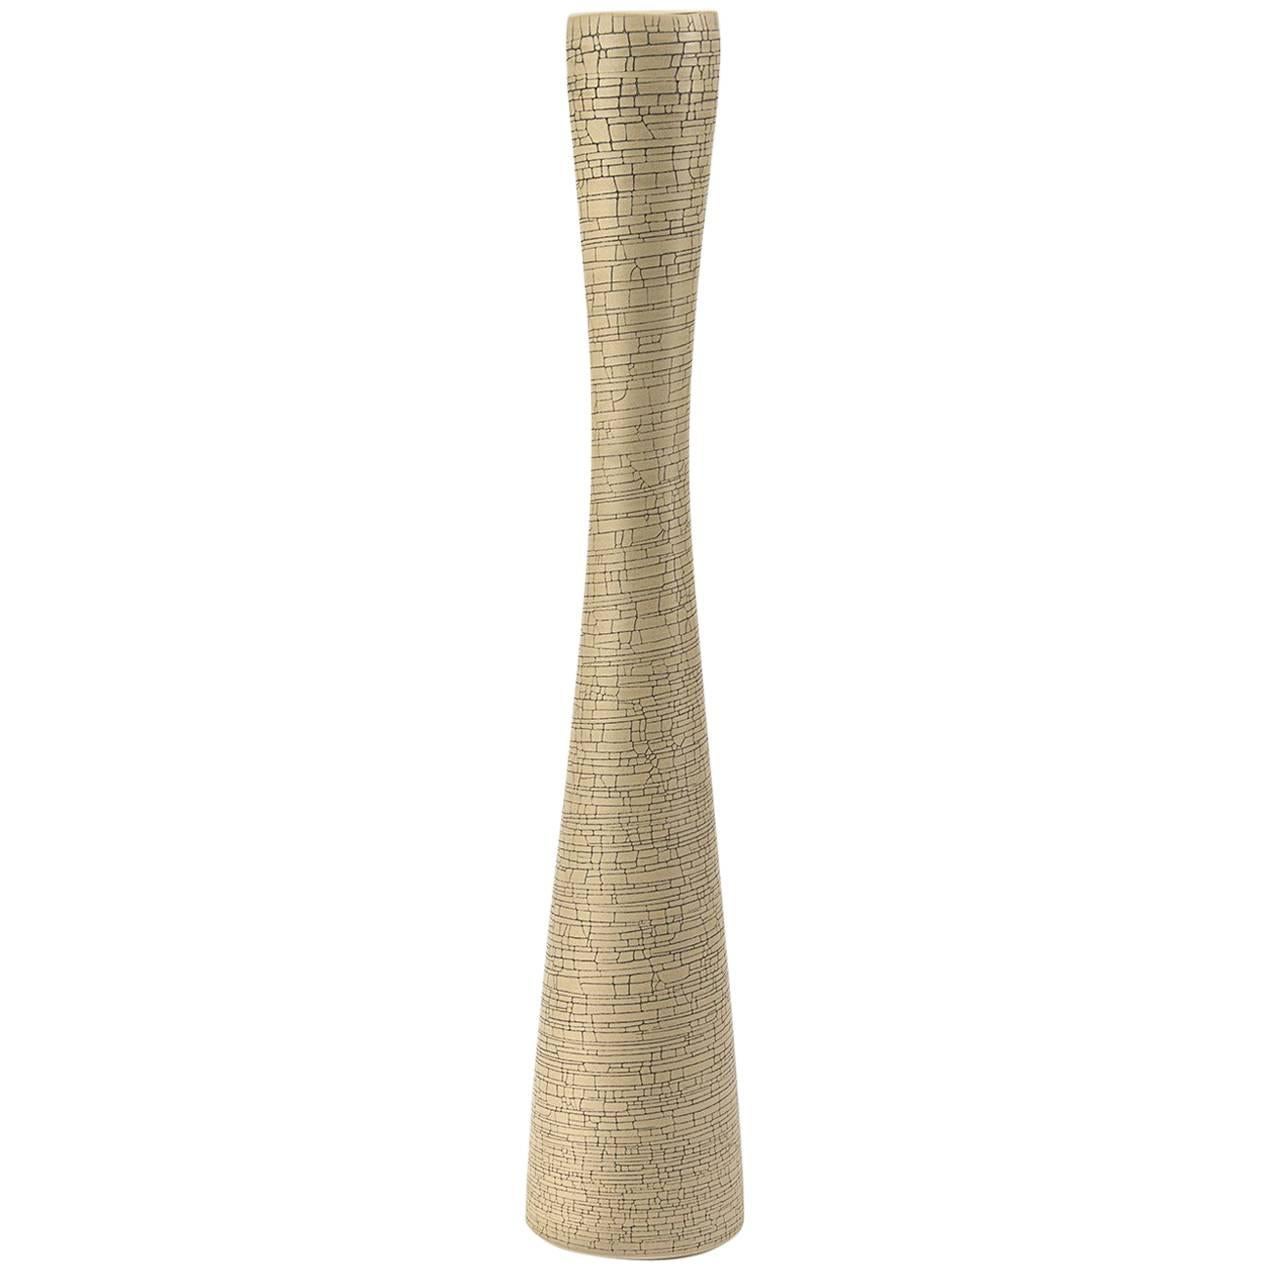 Cracqueled Birch Handmade Ceramic Flute Vase, Rina Menardi 